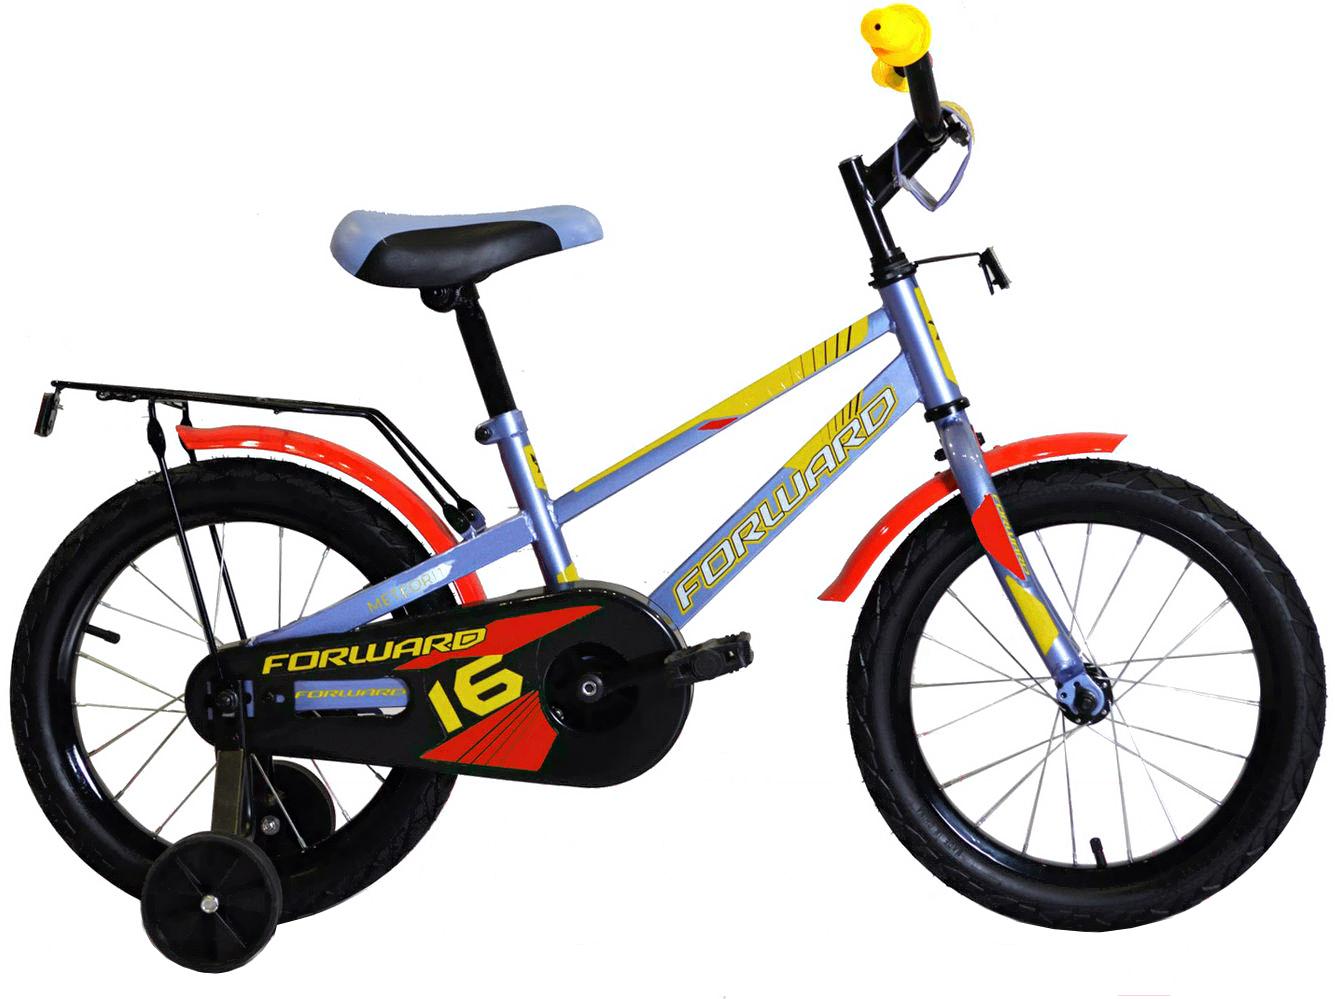 

Велосипед детский Forward Meteor 14'' 2020 серо-голубой/красный, Meteor 14 2020 детский